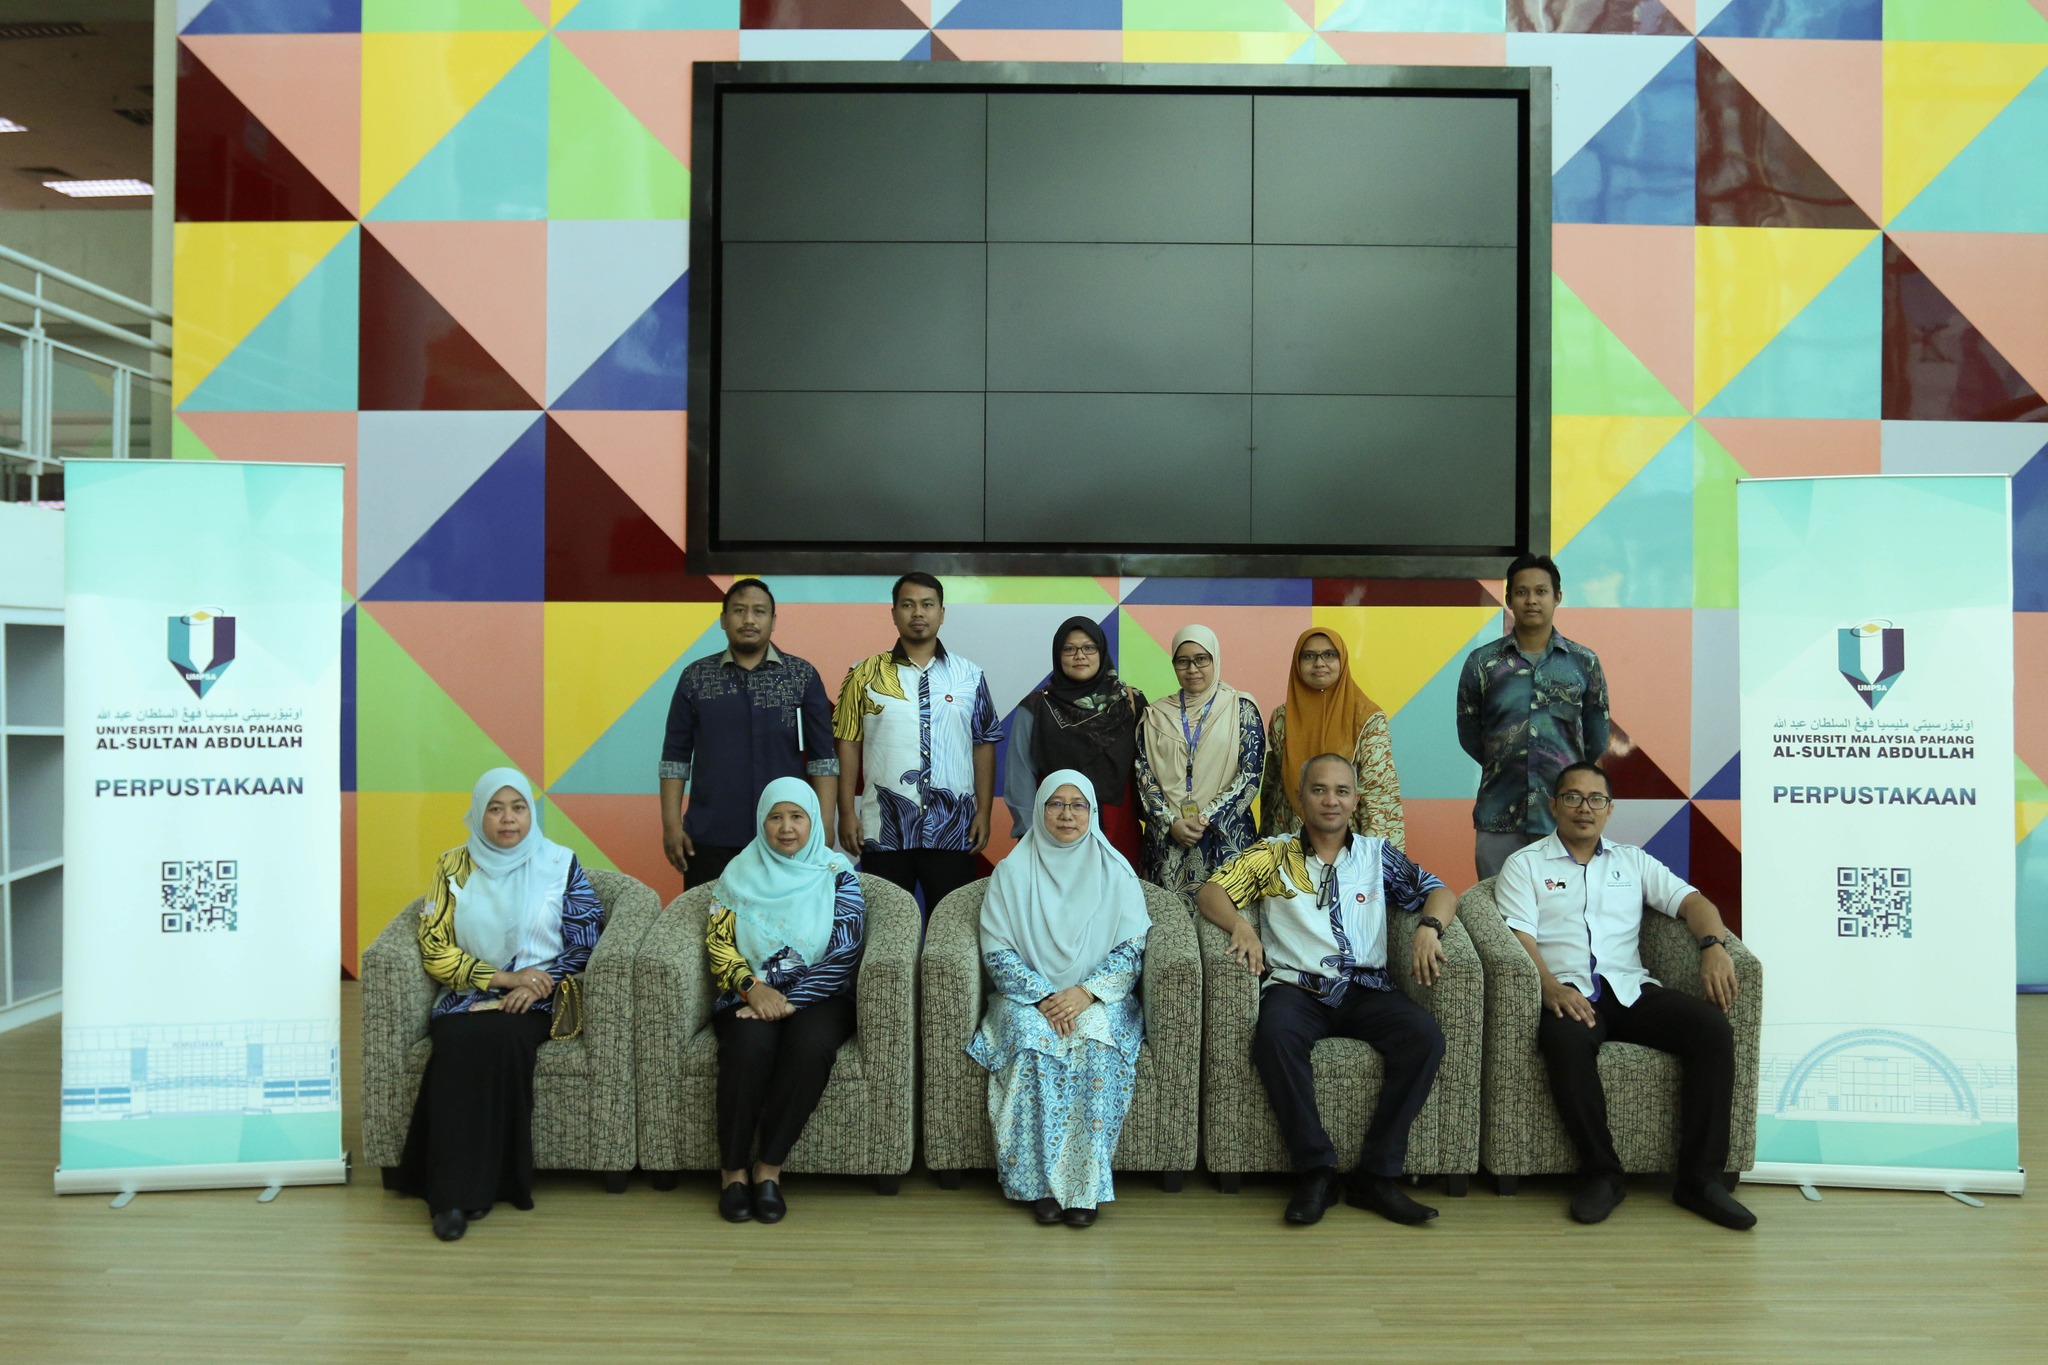 UMPSA Library - Lawatan Penanda Aras Perpustakaan Tuanku Bainun Universiti Pendidikan Sultan Idris (UPSI) Ke Perpustakaan Universiti Malaysia Pahang Al-Sultan Abdullah Kampus Pekan